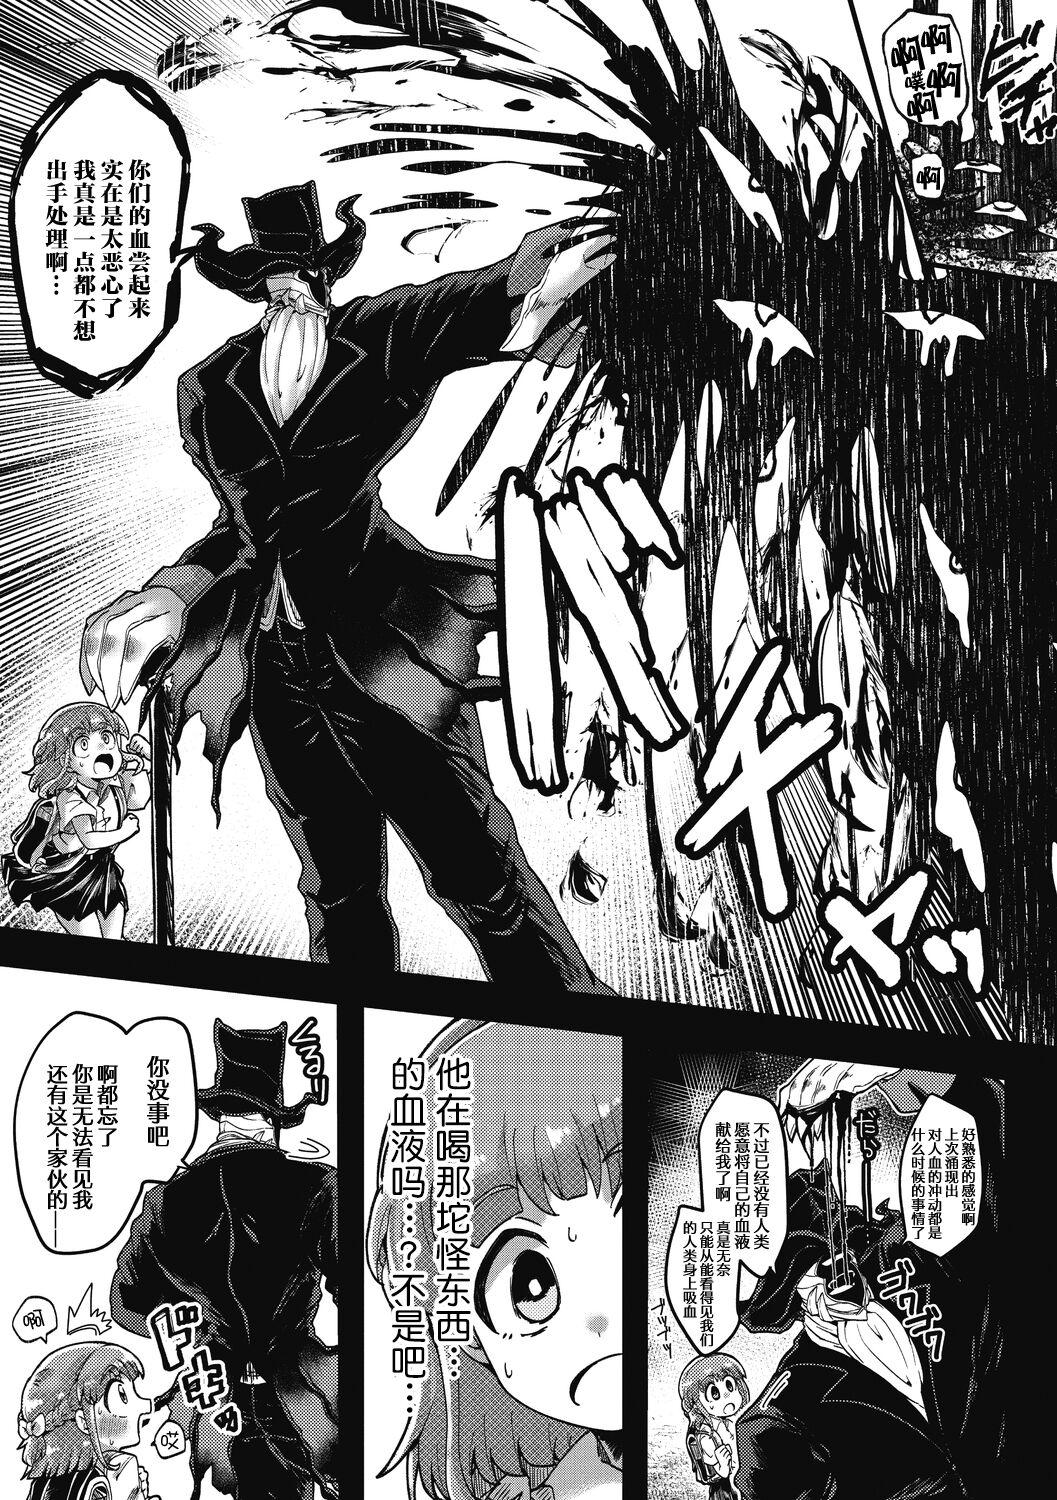 Butt Plug Watashi no Homme Fatale Lady - Page 3